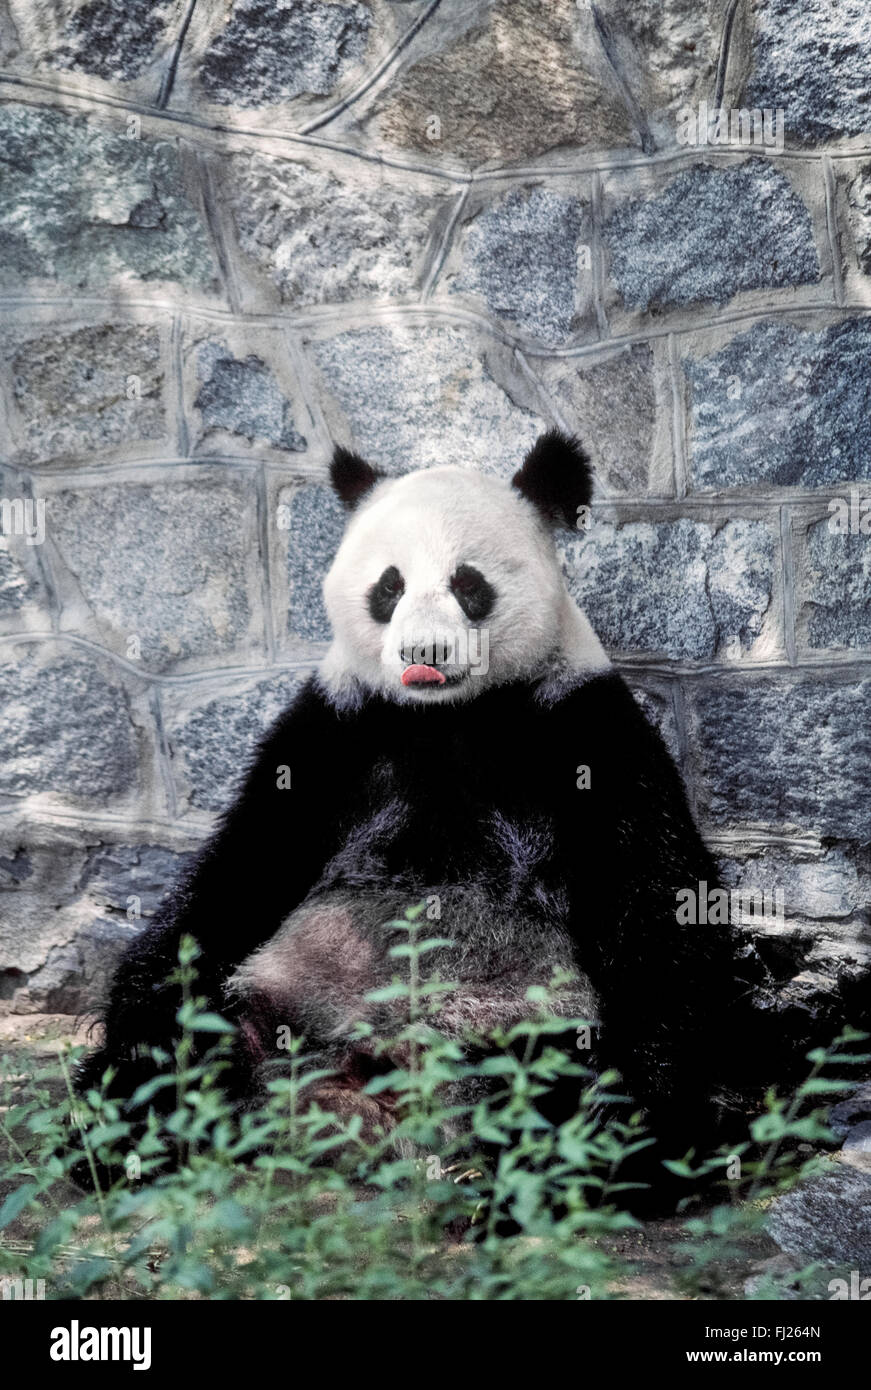 Un panda gigante lambisce le sue labbra mentre aspettando pazientemente per la consegna del suo cibo preferito, bambù, all'interno dell'orso panda presentano allo zoo nella città portuale di Dalian nella Repubblica Popolare Cinese (PRC). Queste rare e in pericolo di estinzione mammiferi vivono principalmente in Cina nel deserto santuari, i centri di allevamento e i giardini zoologici. Per le tasse annuali, i cinesi di prestito anche loro panda giganti in altri giardini zoologici in tutto il mondo. Foto Stock